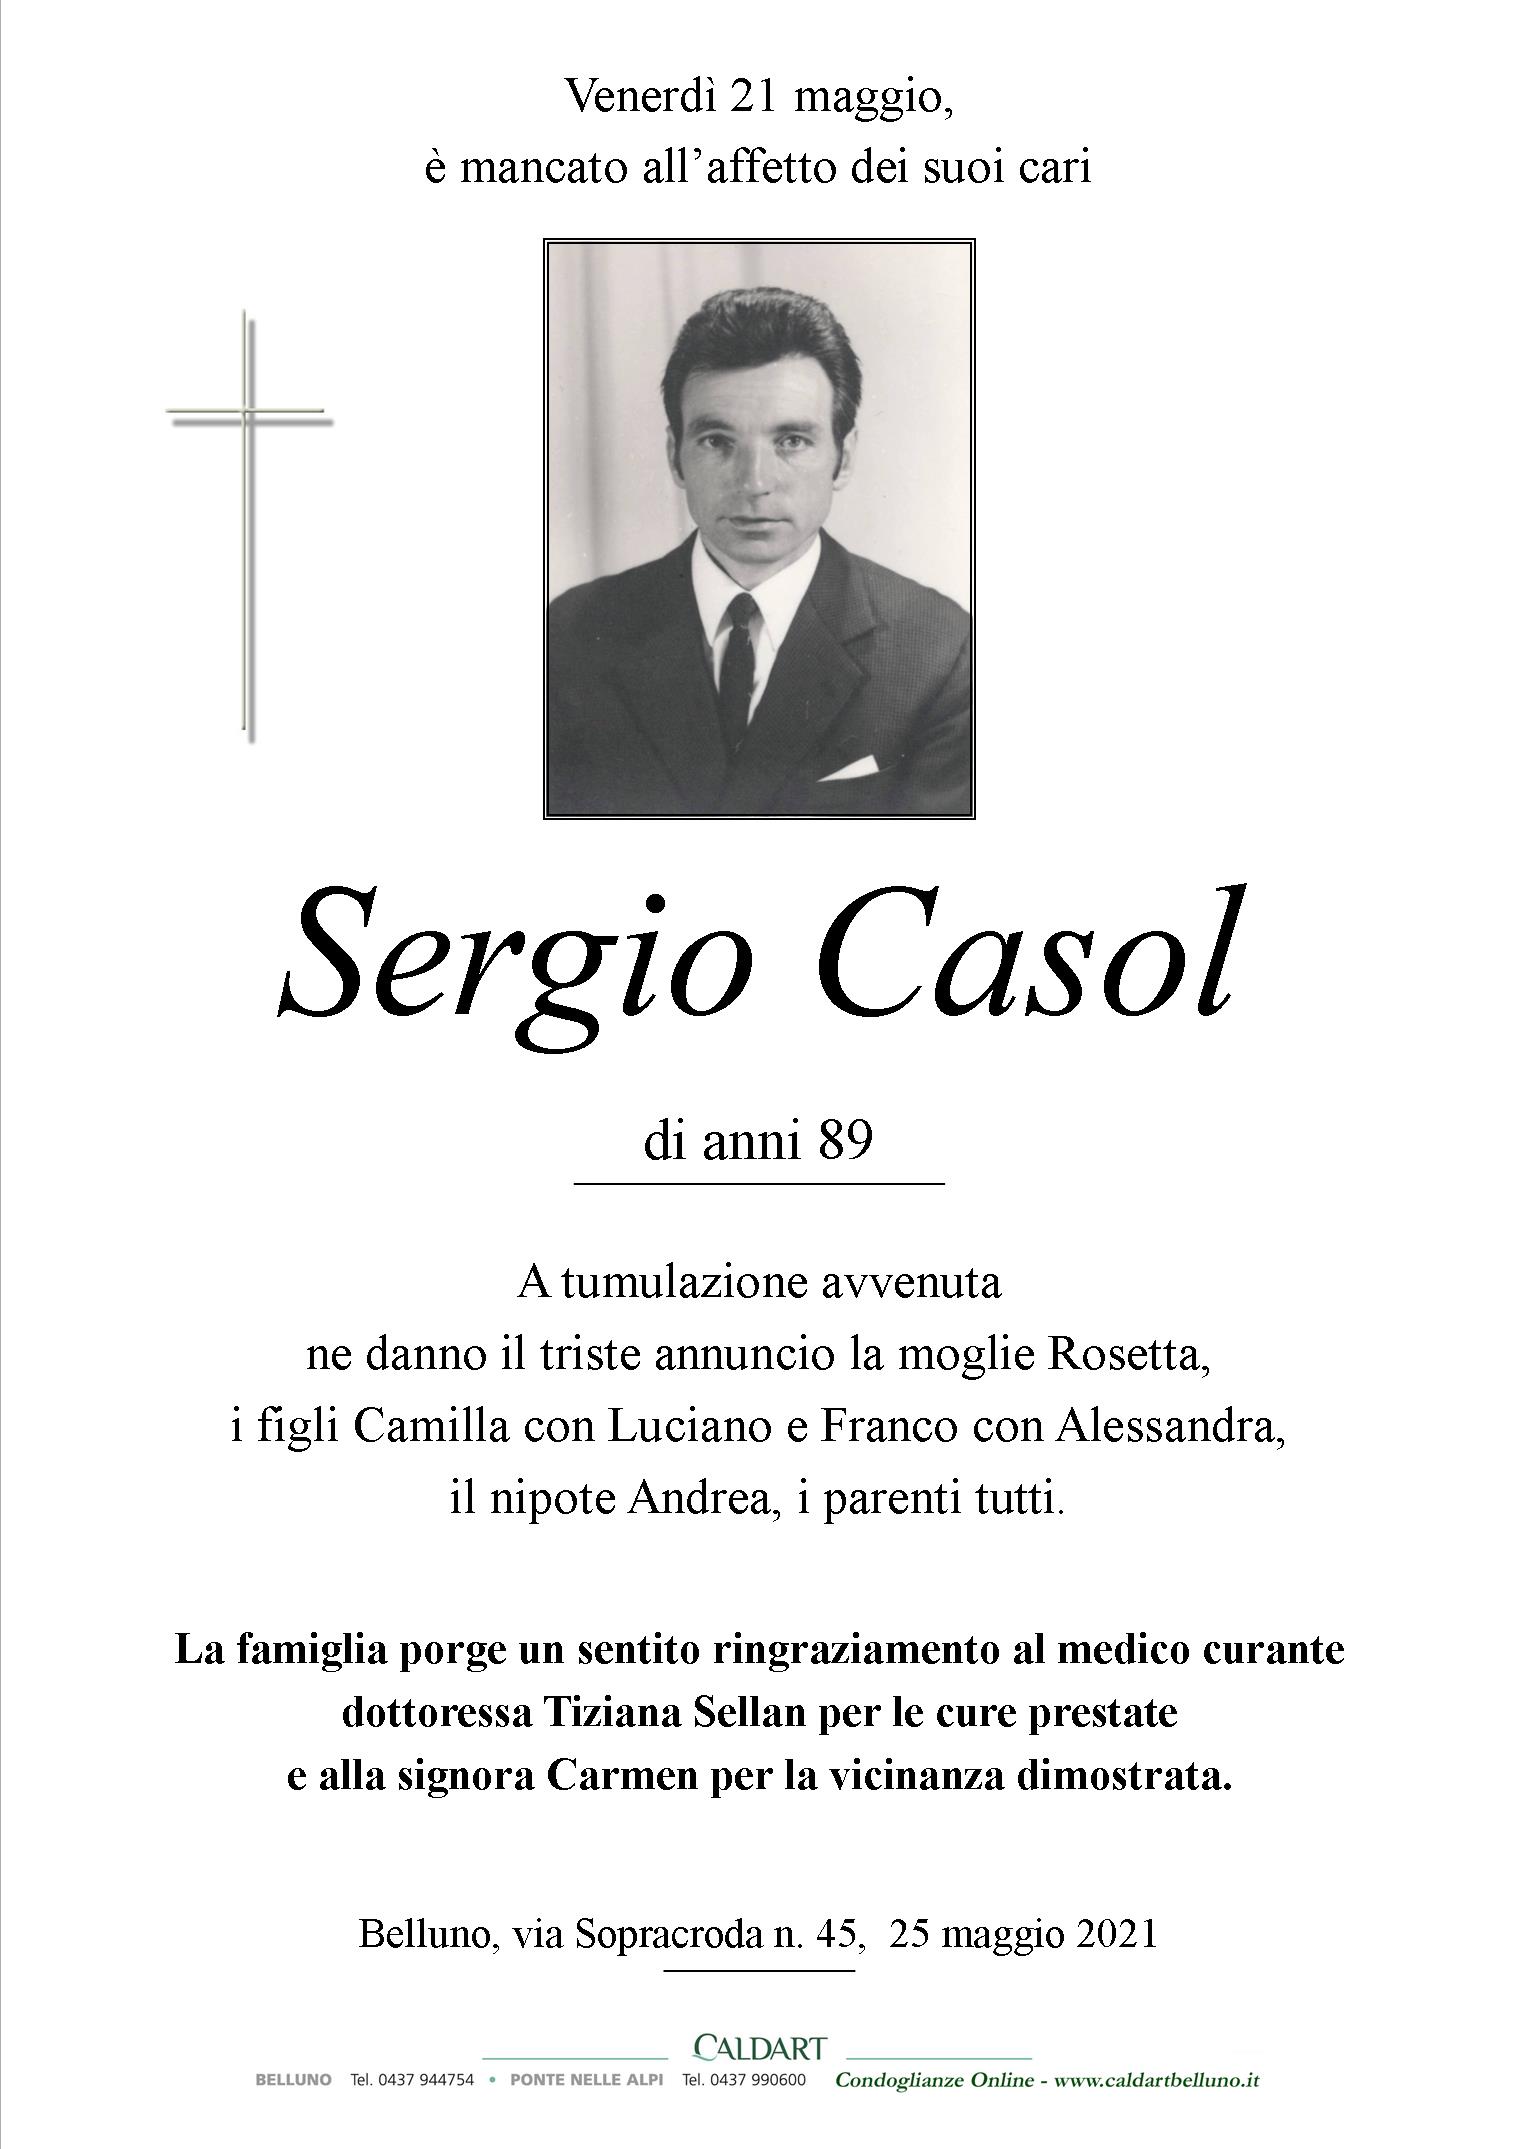 Casol Sergio